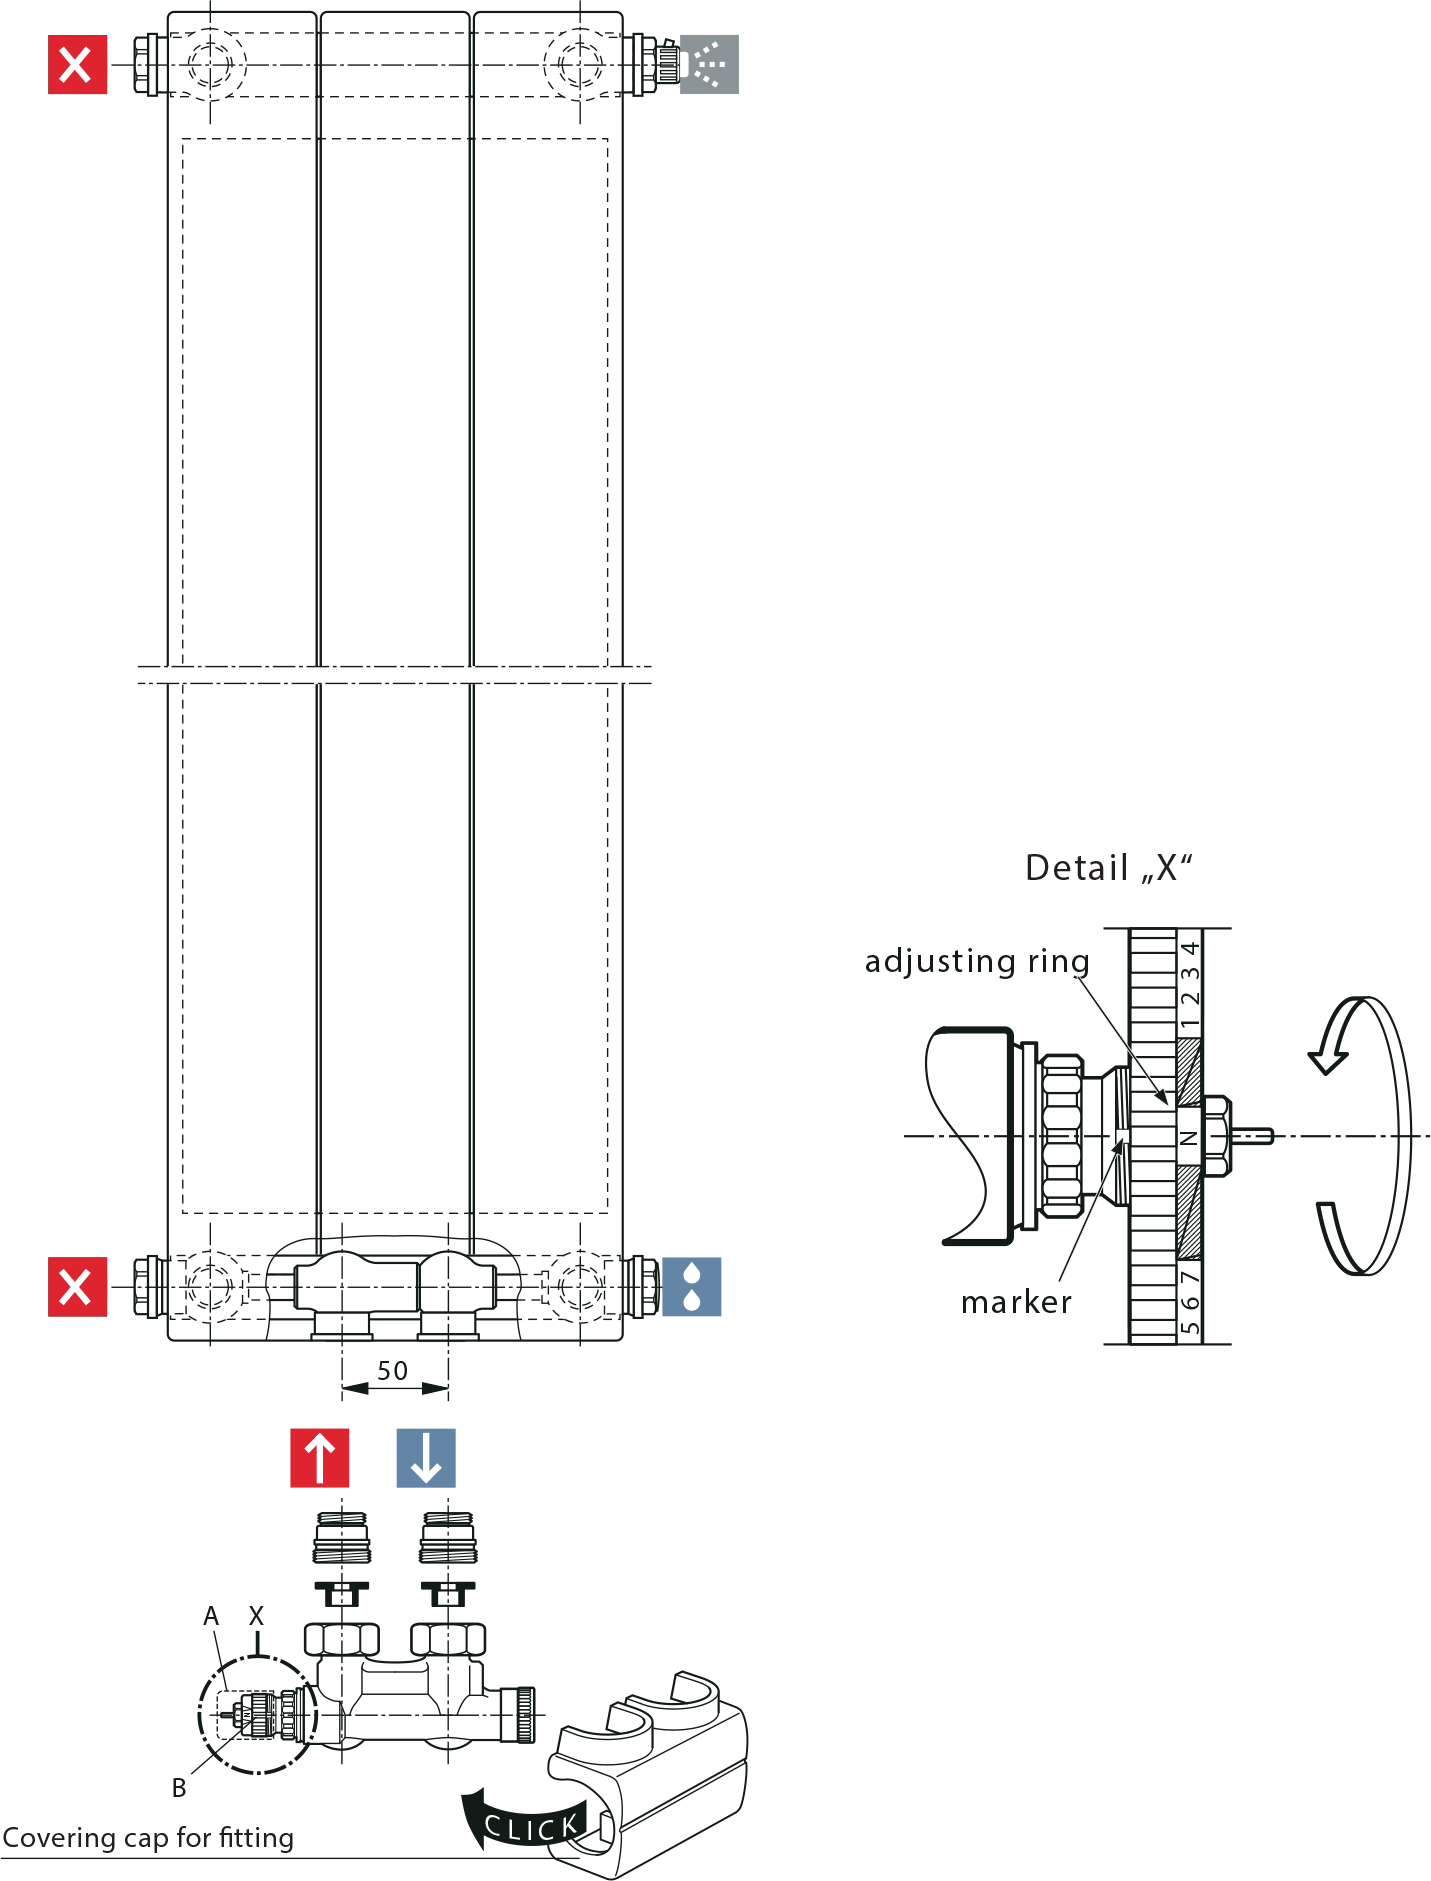 Zweirohrsystem - Anschlussbeispiele